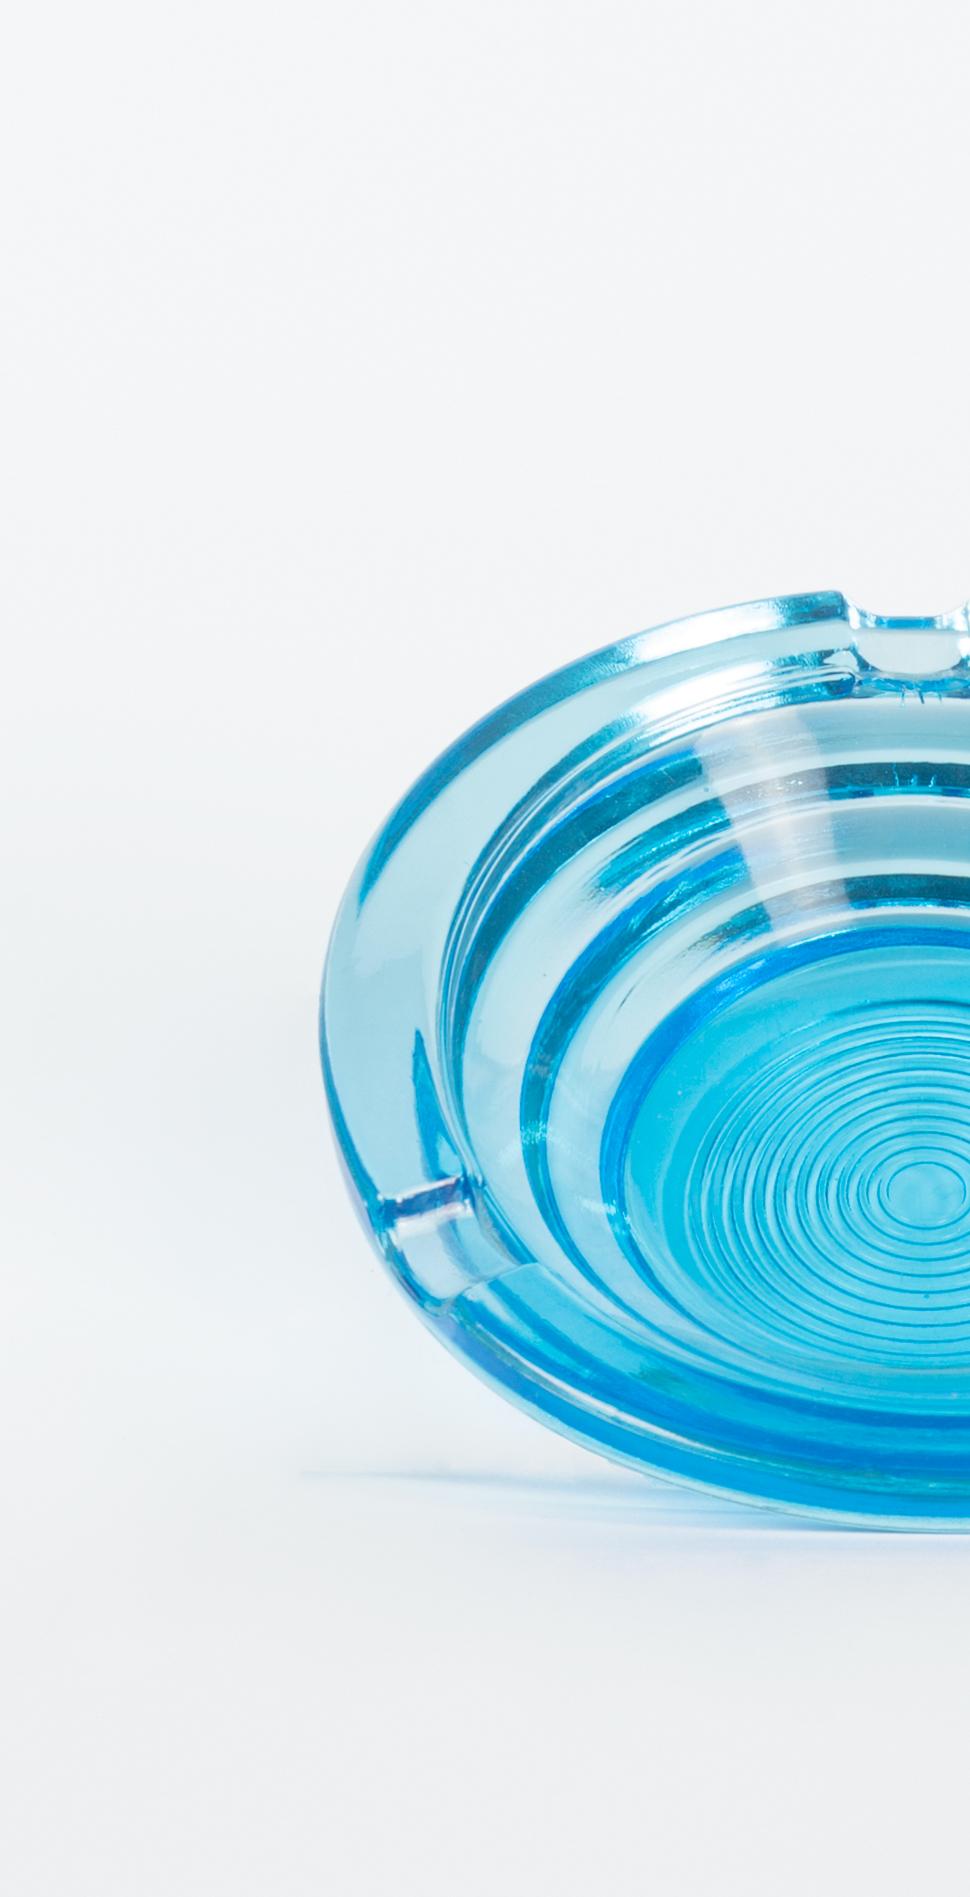 Der blaue Aschenbecher aus Glas ist ein elegantes Dekorationsobjekt aus Glas, das in den 1970er Jahren hergestellt wurde.

Sehr elegantes Glas Aschenbecher runde Form und brillante blaue Farbe.

Gute Bedingungen.